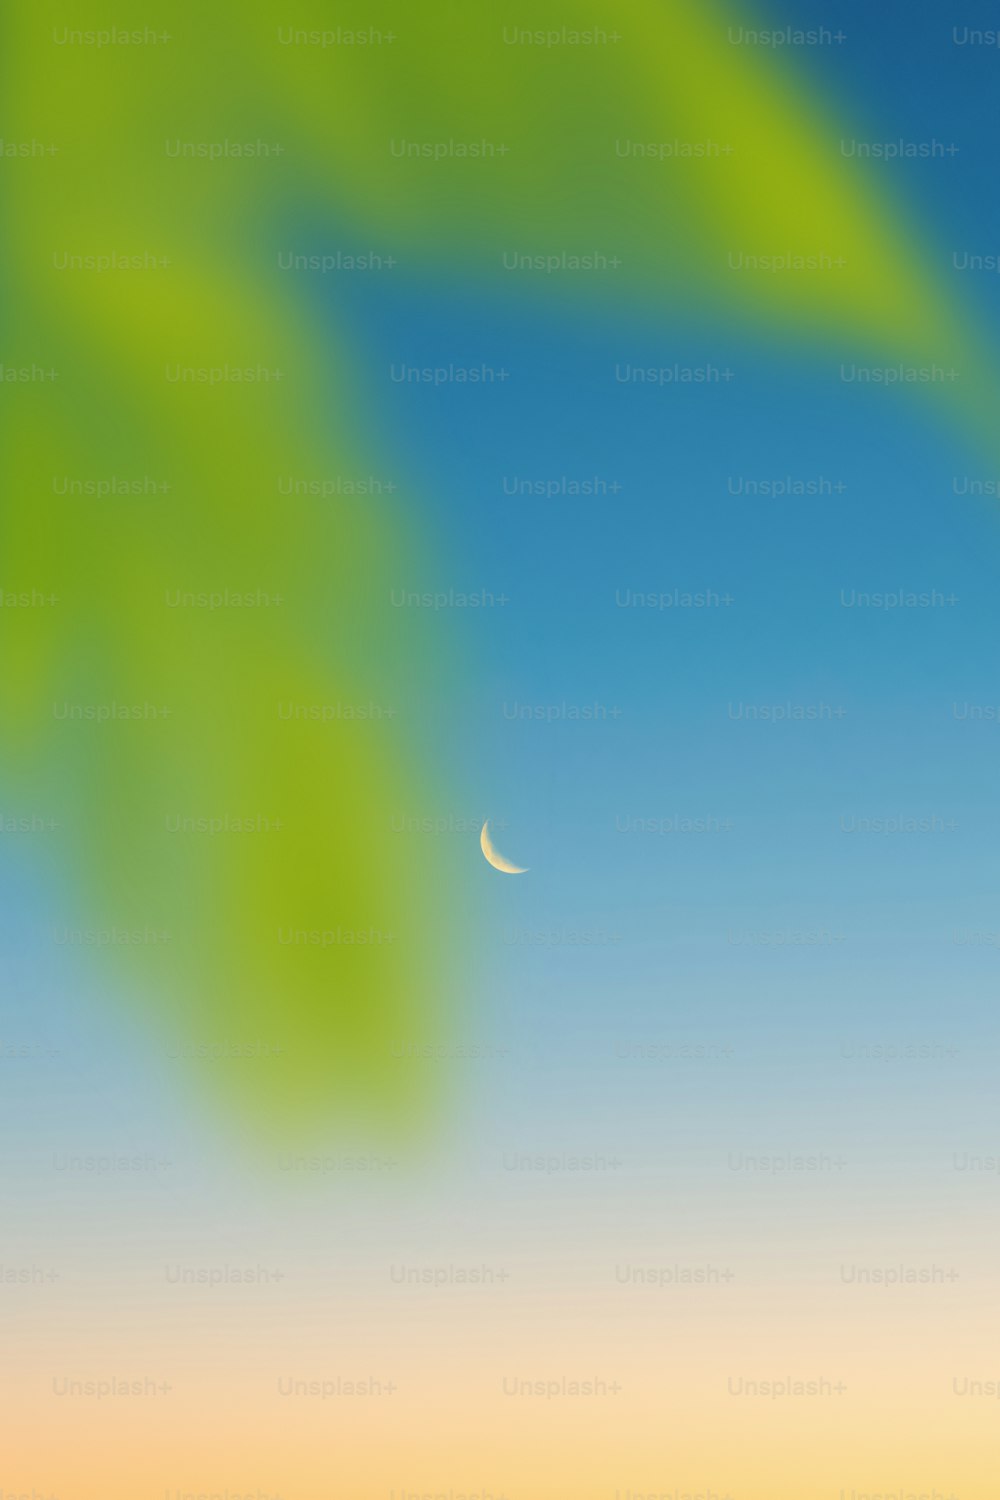 une image floue d’une feuille verte et d’une demi-lune